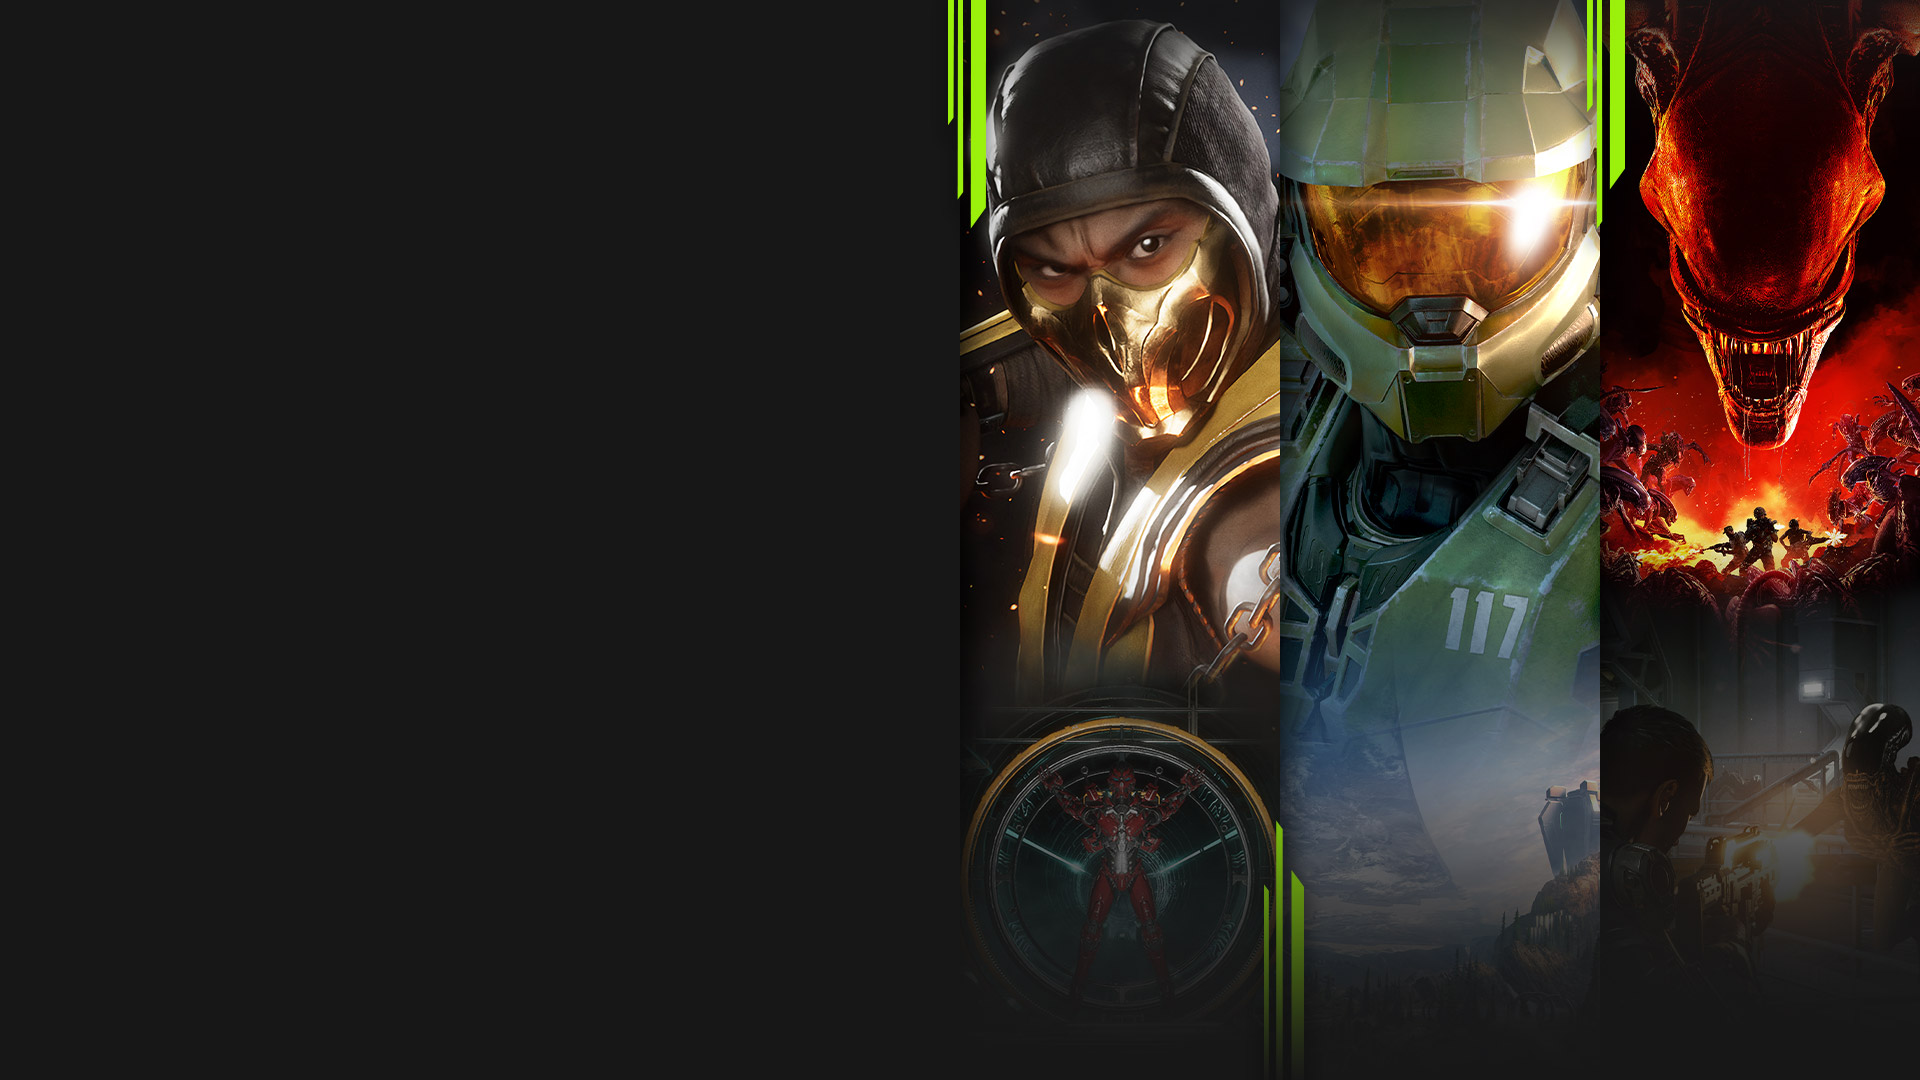 Imágenes de varios juegos disponibles ahora con Xbox Game Pass, entre los que se incluyen Mortal Kombat 11, Halo Infinite, Aliens: Fireteam Elite y Warhammer 40,000: Battlesector.